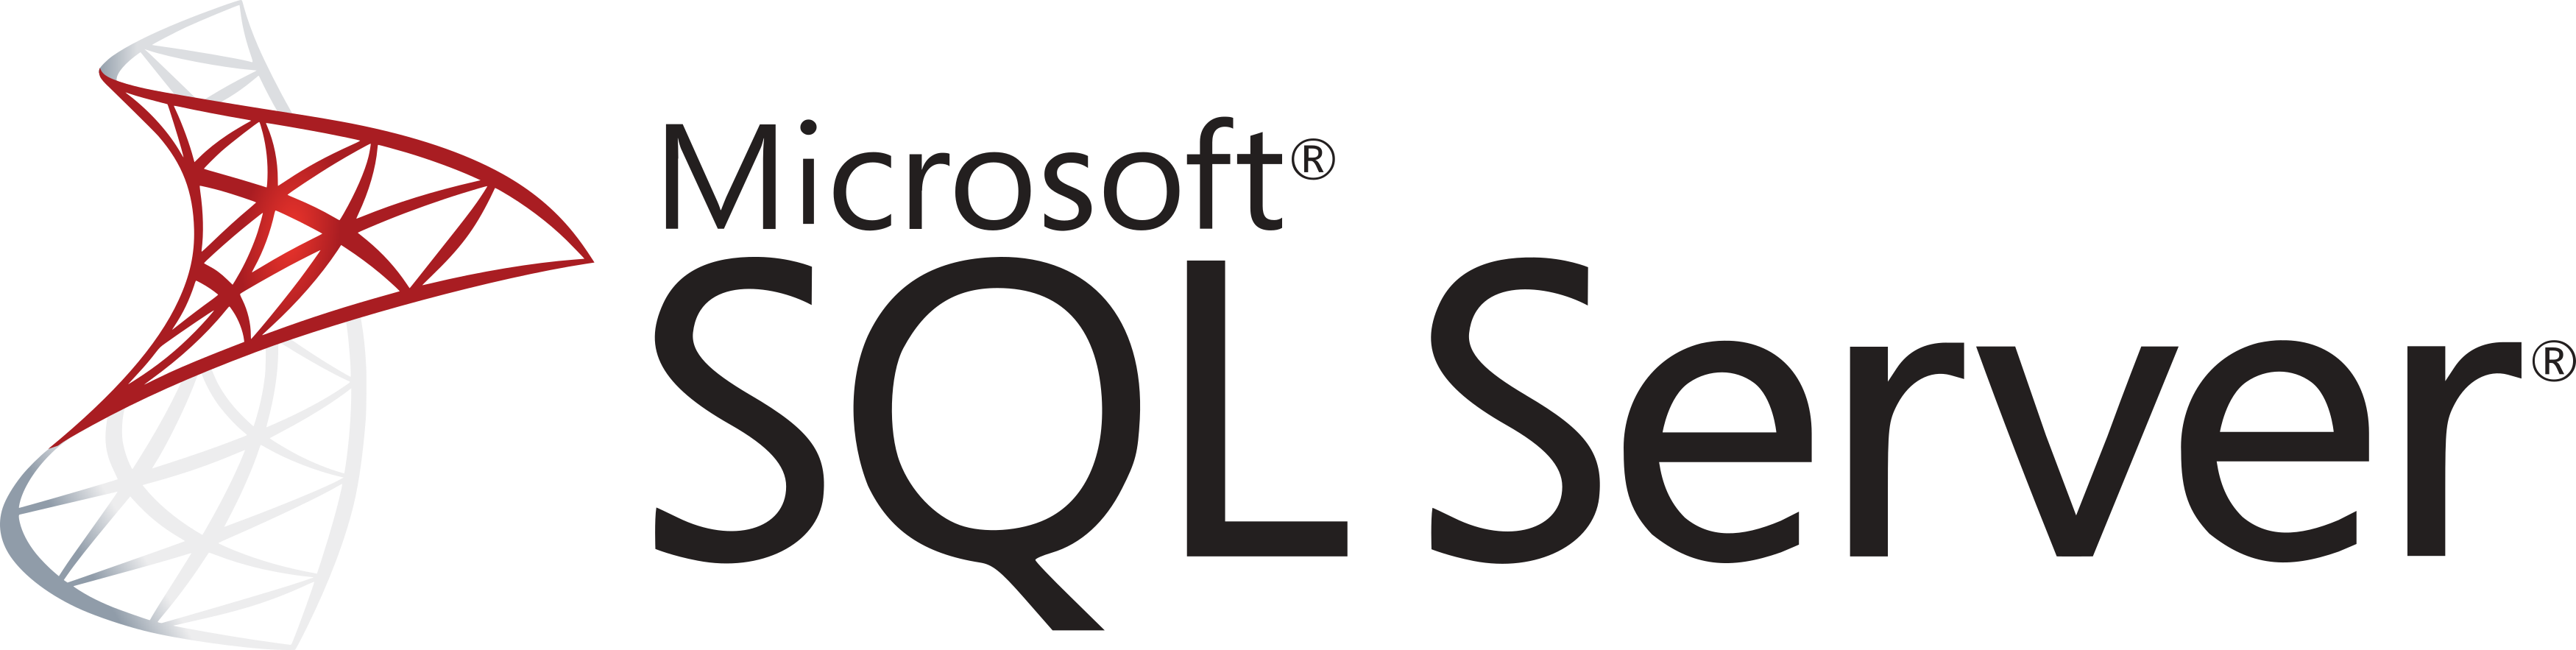 Ms Sql Server Logo